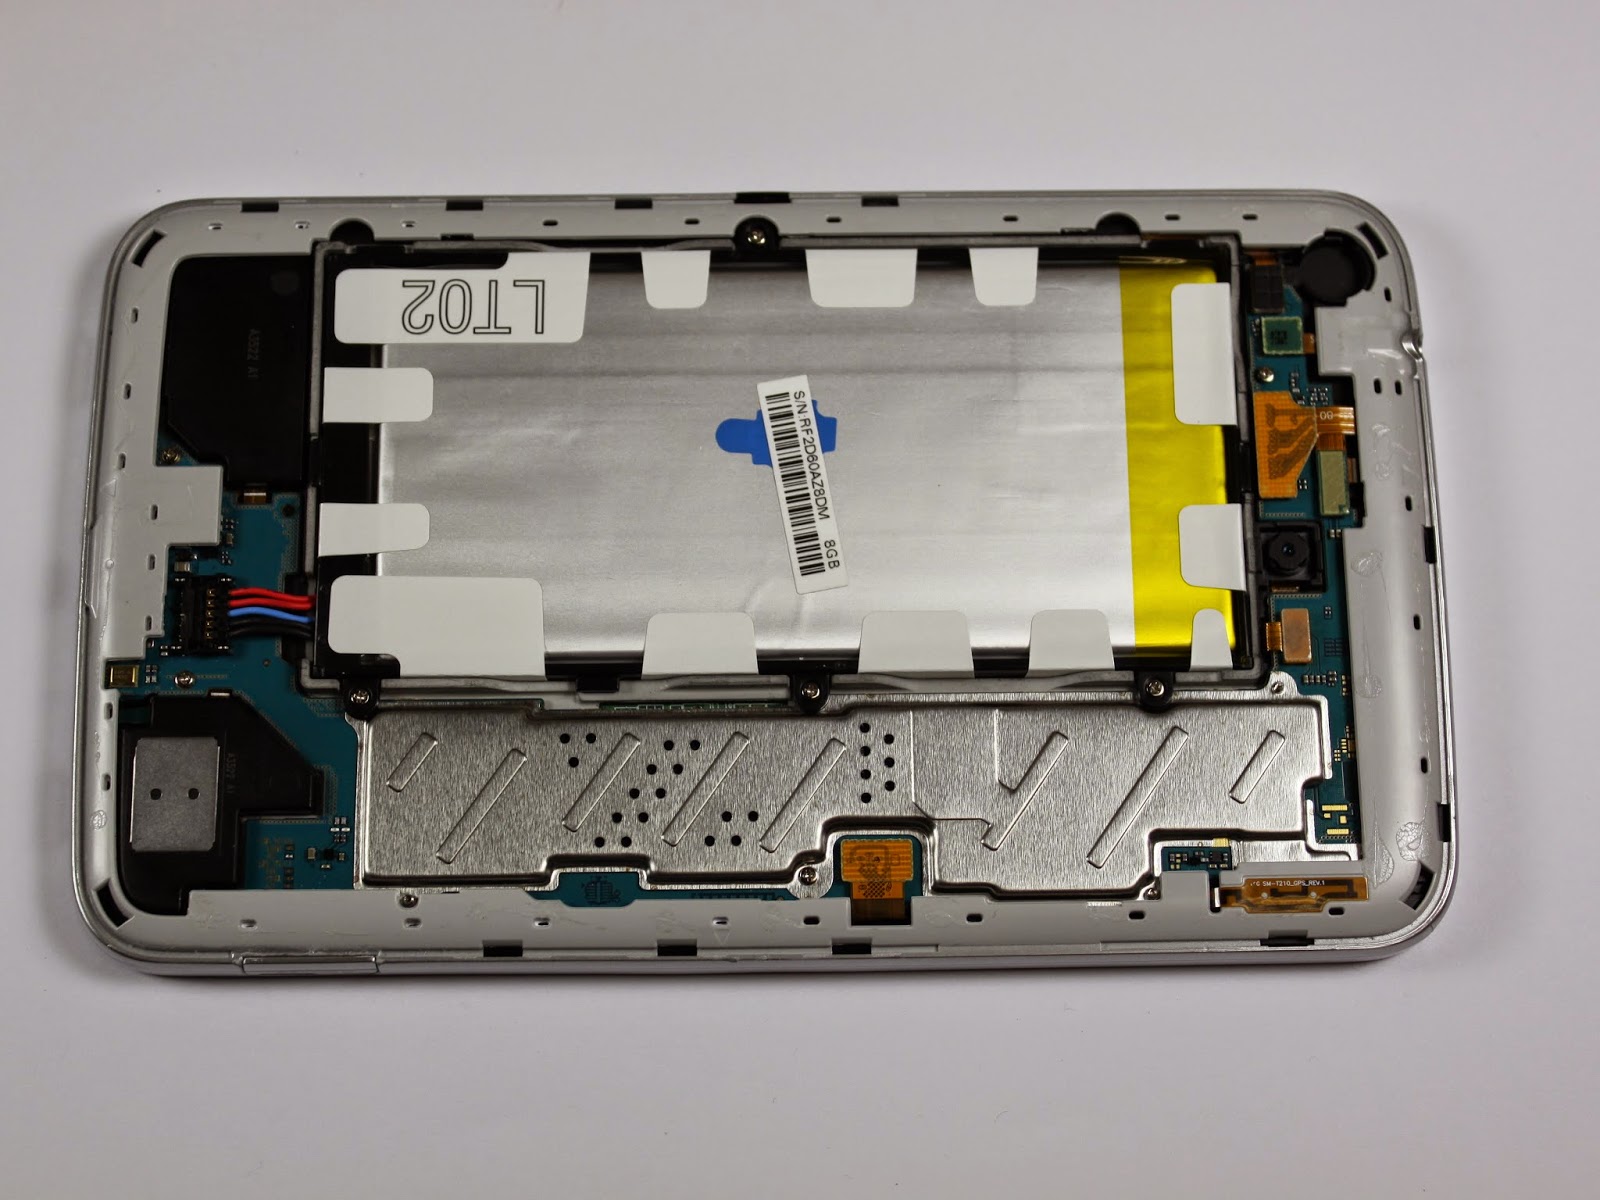 Galaxy 3 7. Samsung Galaxy Tab 3 батарея. Galaxy Tab 3 батарея для галакси 2. Самсунг галакси таб 3 батарея. Samsung Galaxy Tab 3 SM-t310 аккумулятор.